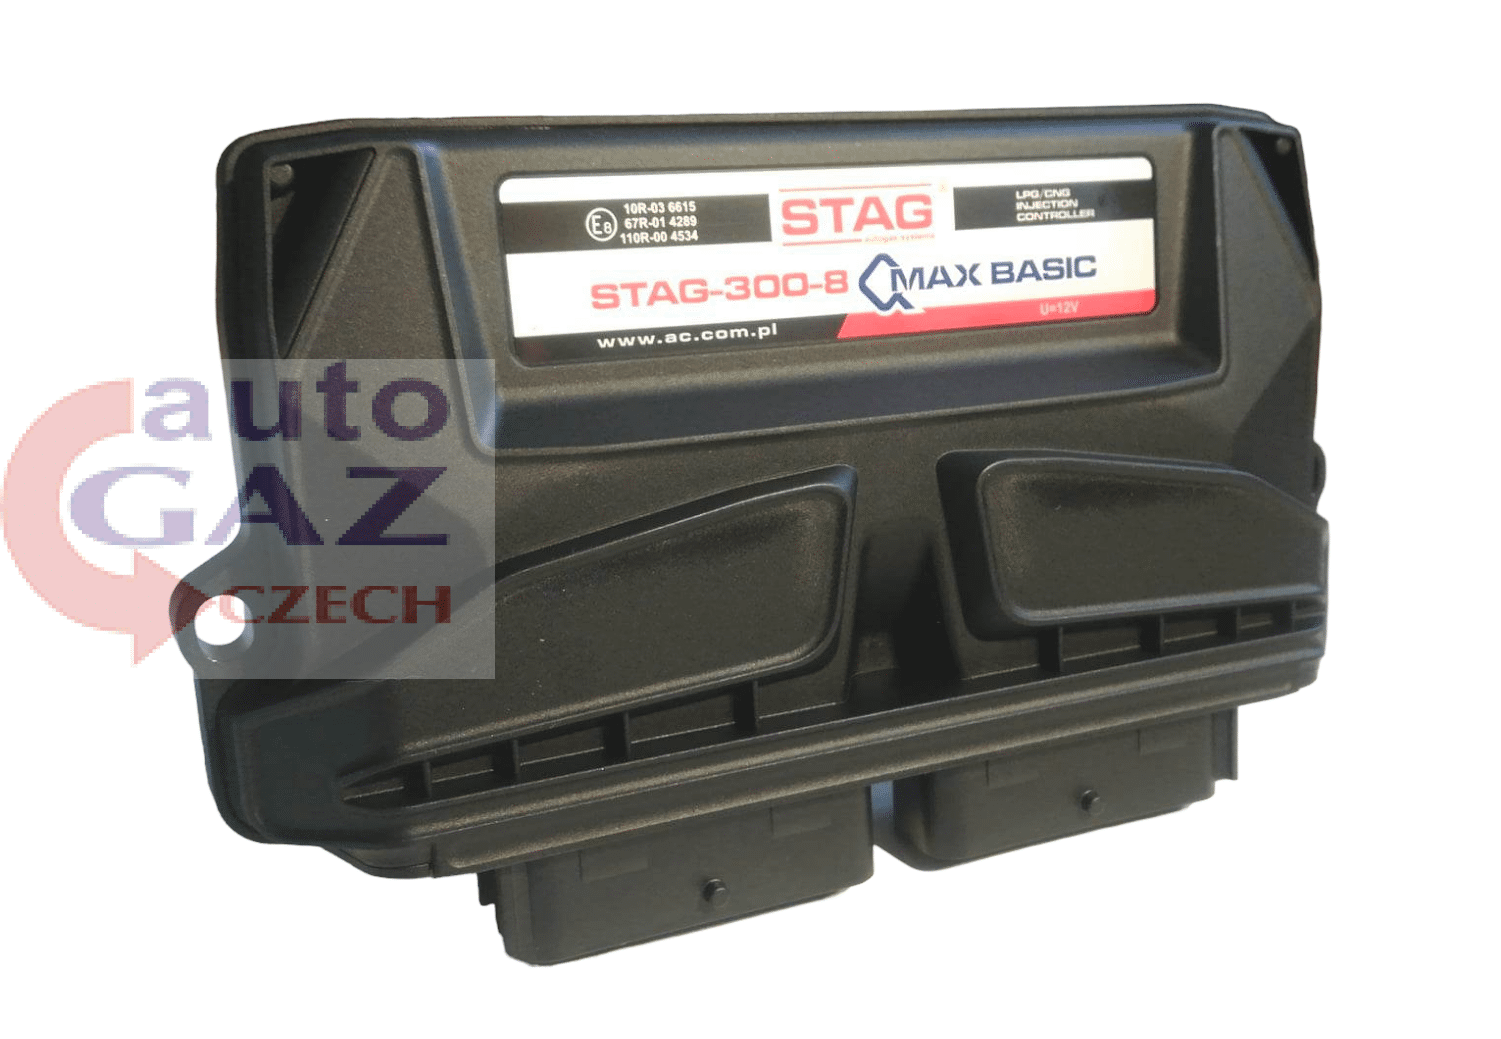 Sterownik komputer STAG-300-8 QMAX BASIC